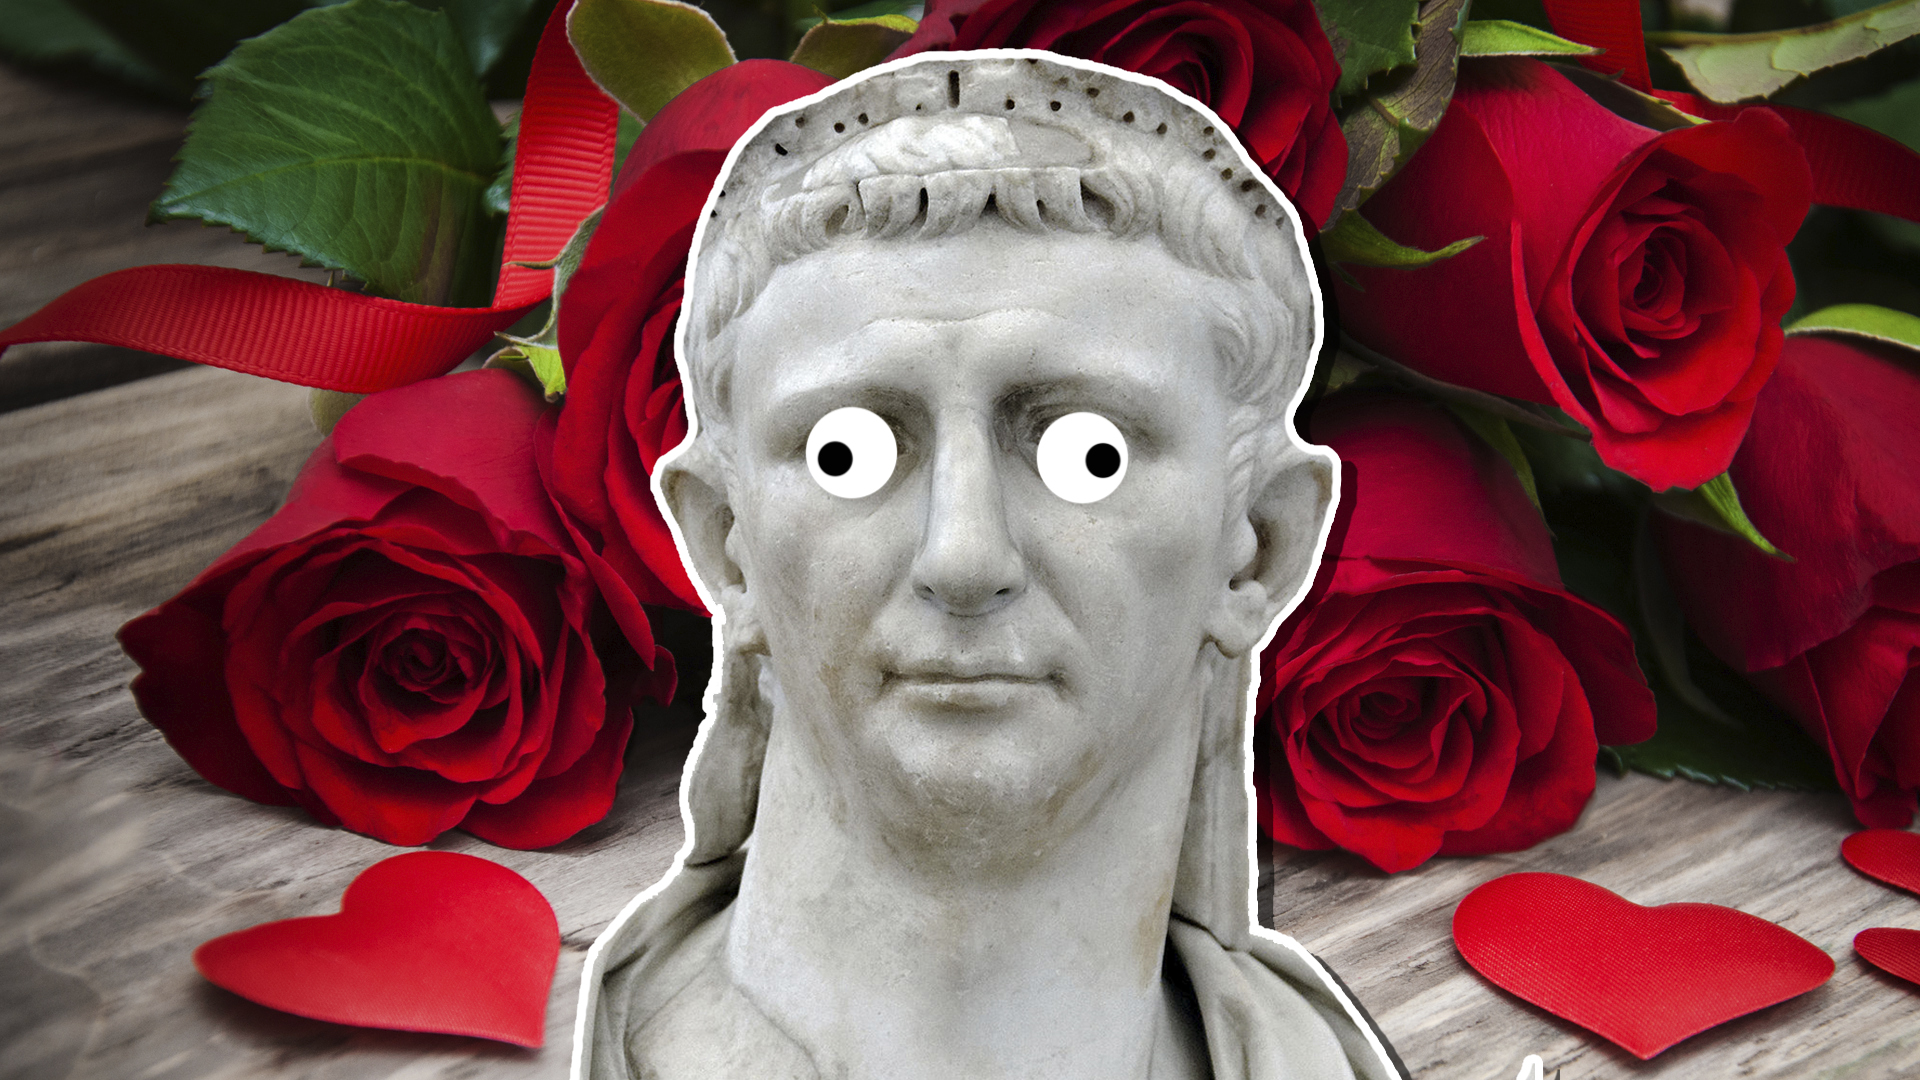 A statue of Emperor Claudius II